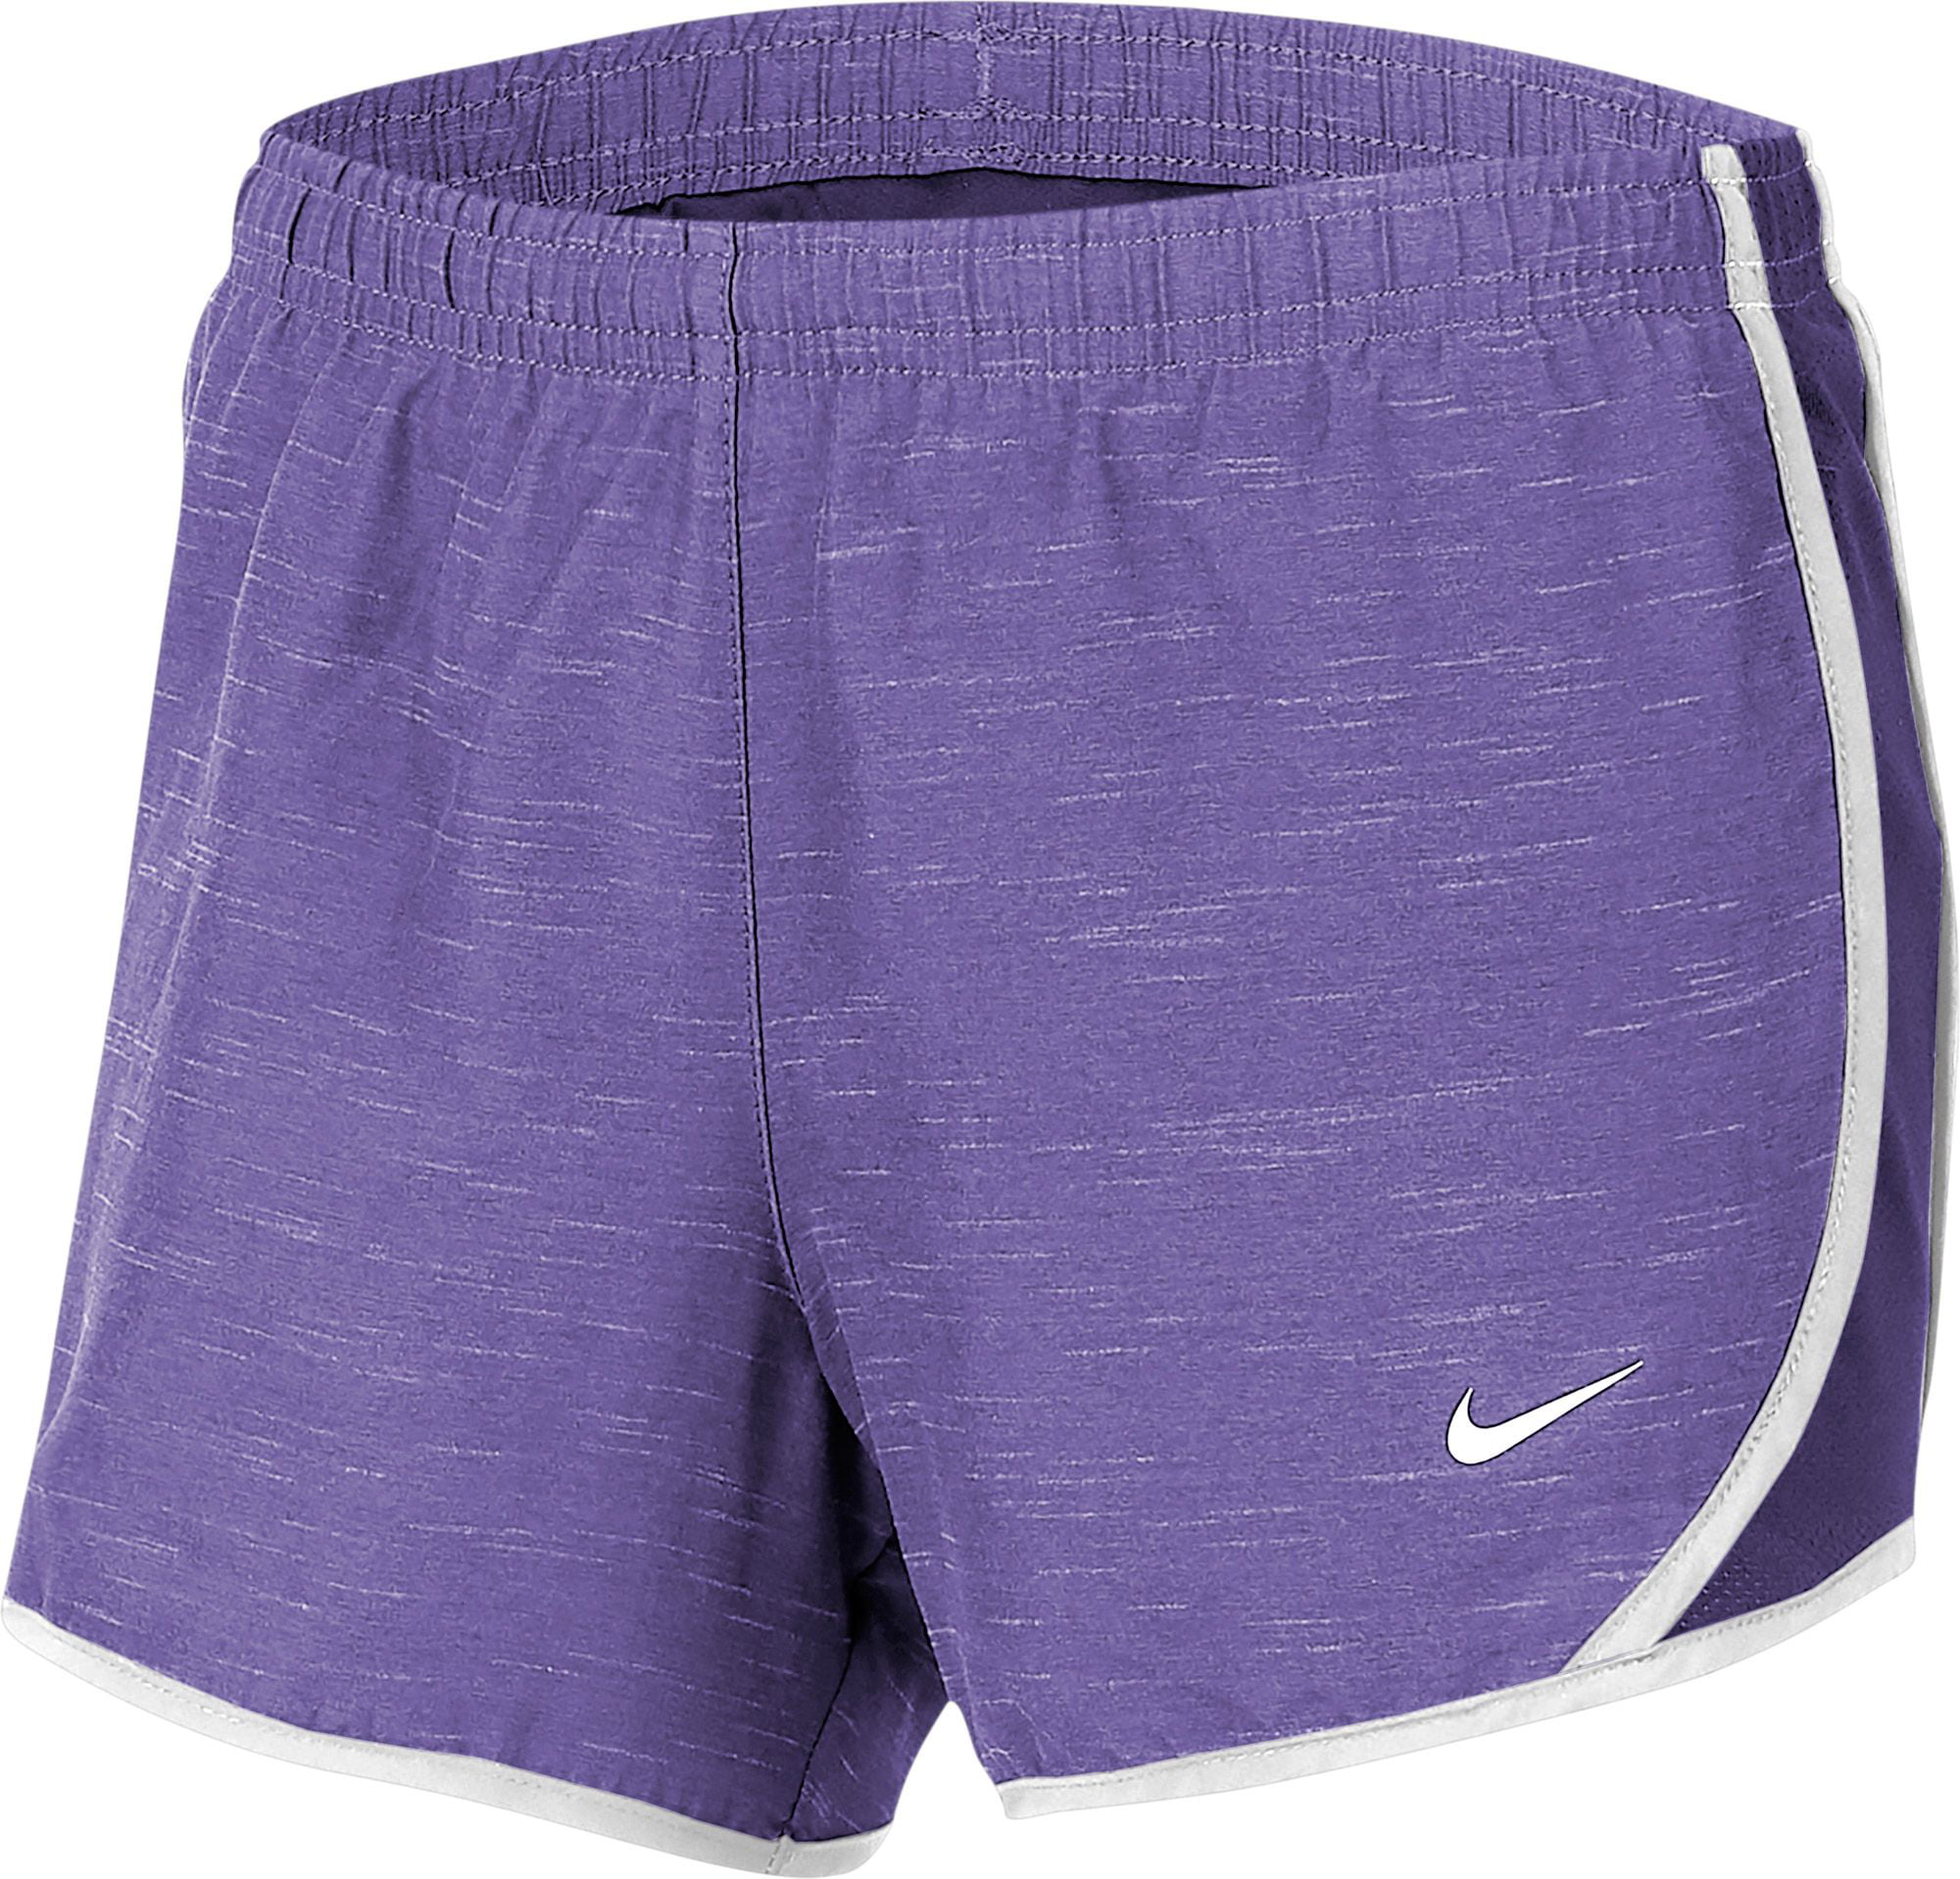 Nike Girls' Dry Heathered Tempo Running Shorts - Walmart.com - Walmart.com